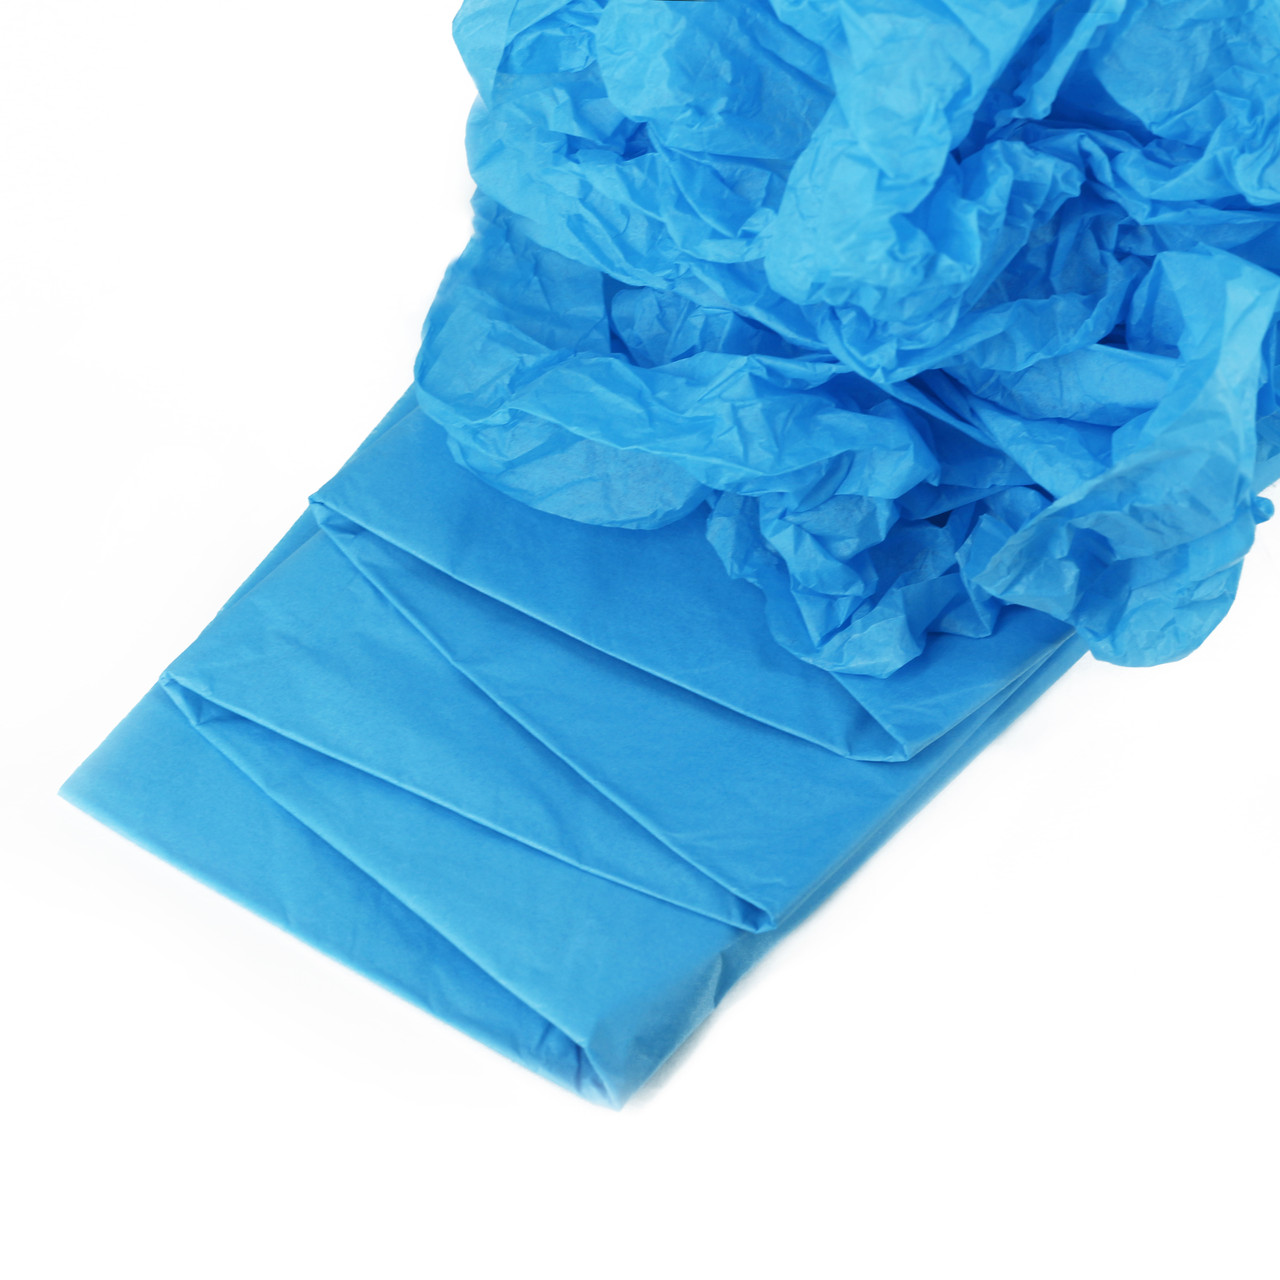 Бумага тишью купить москва. Бумага упаковочная тишью, 10 листов, 50 см х 66 см яркий голубой. Бумага тишью 50х66см (цв.синий). Бумага упаковочная тишью, 10 листов, 50 см х 66 см. Бумага упаковочная тишью, 10 листов, 50 см х 66 см синий.